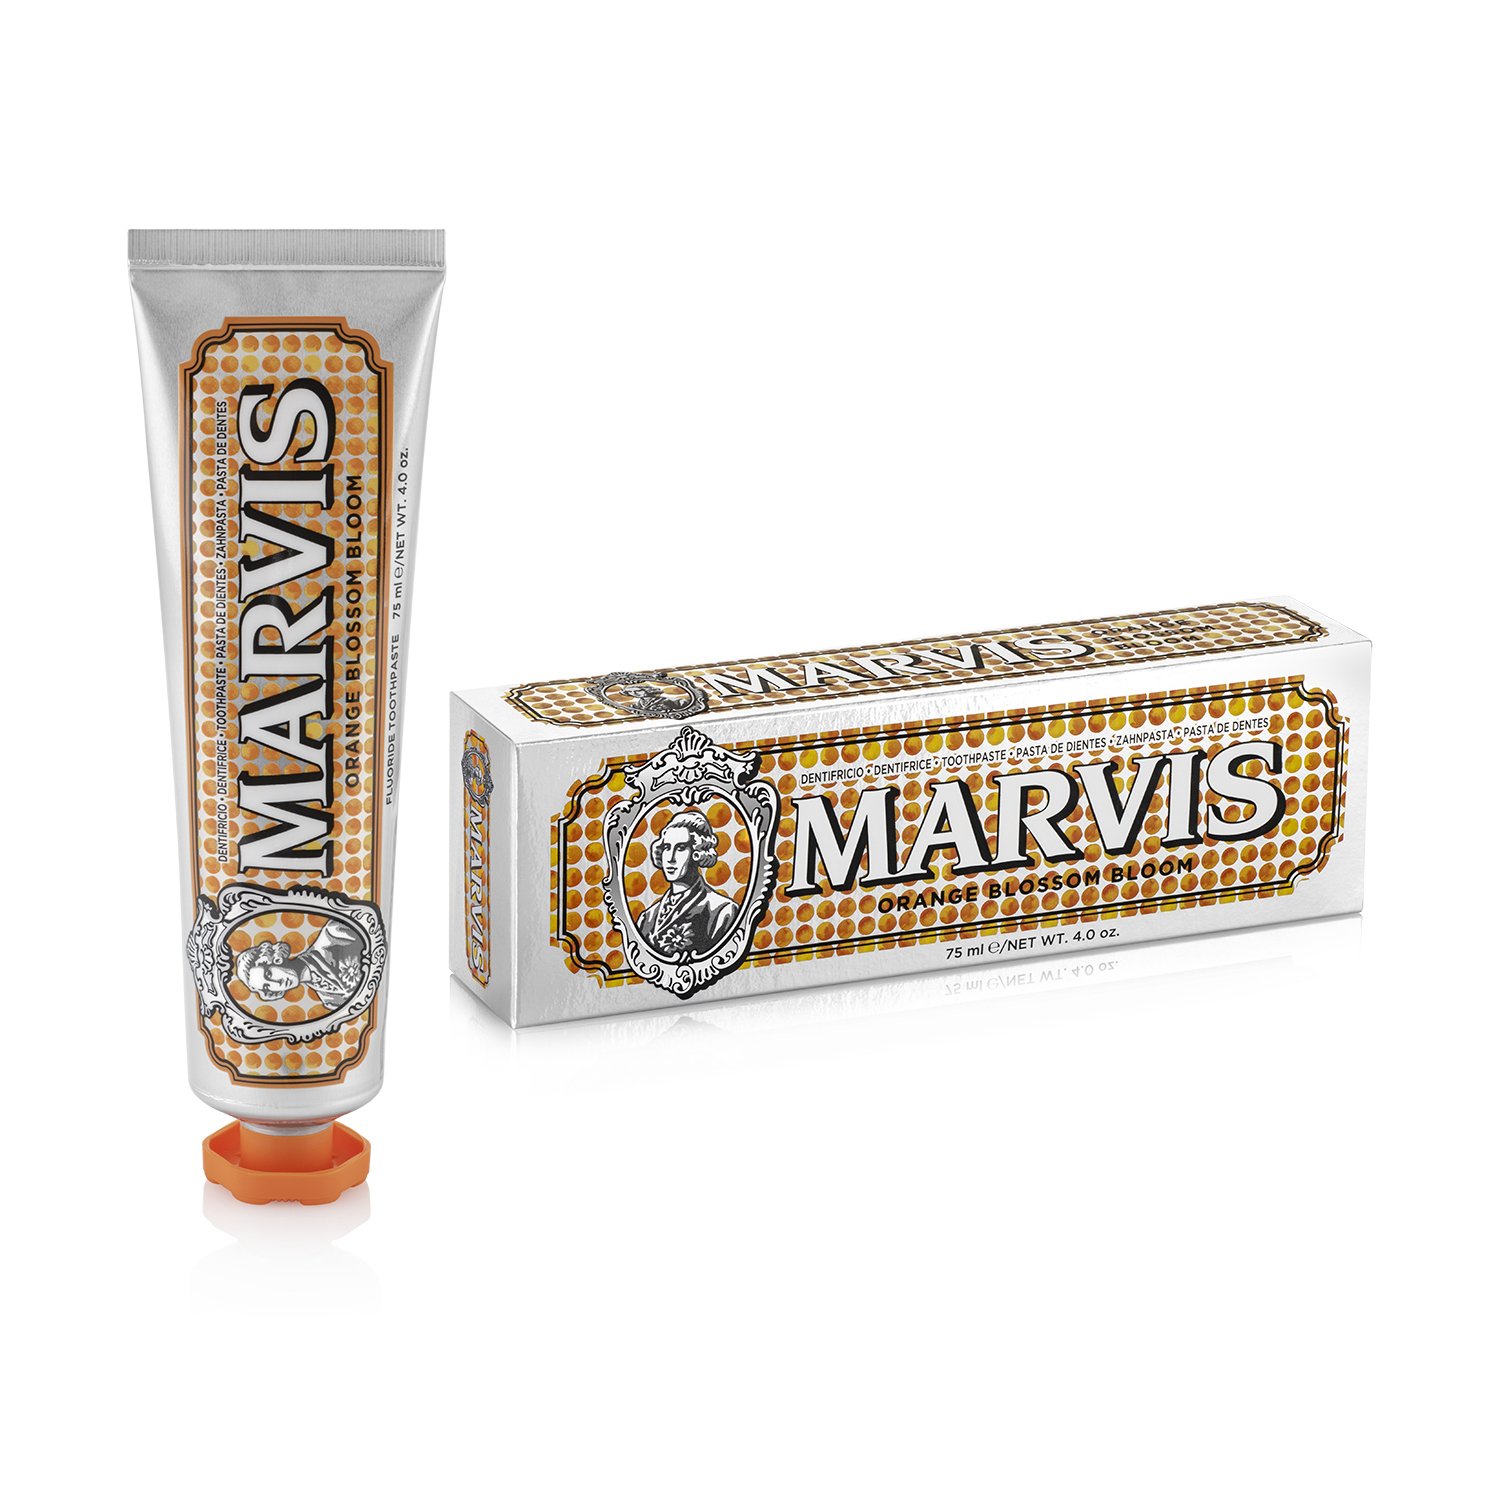 marvis-orange-blossom-bloom-toothpaste-1